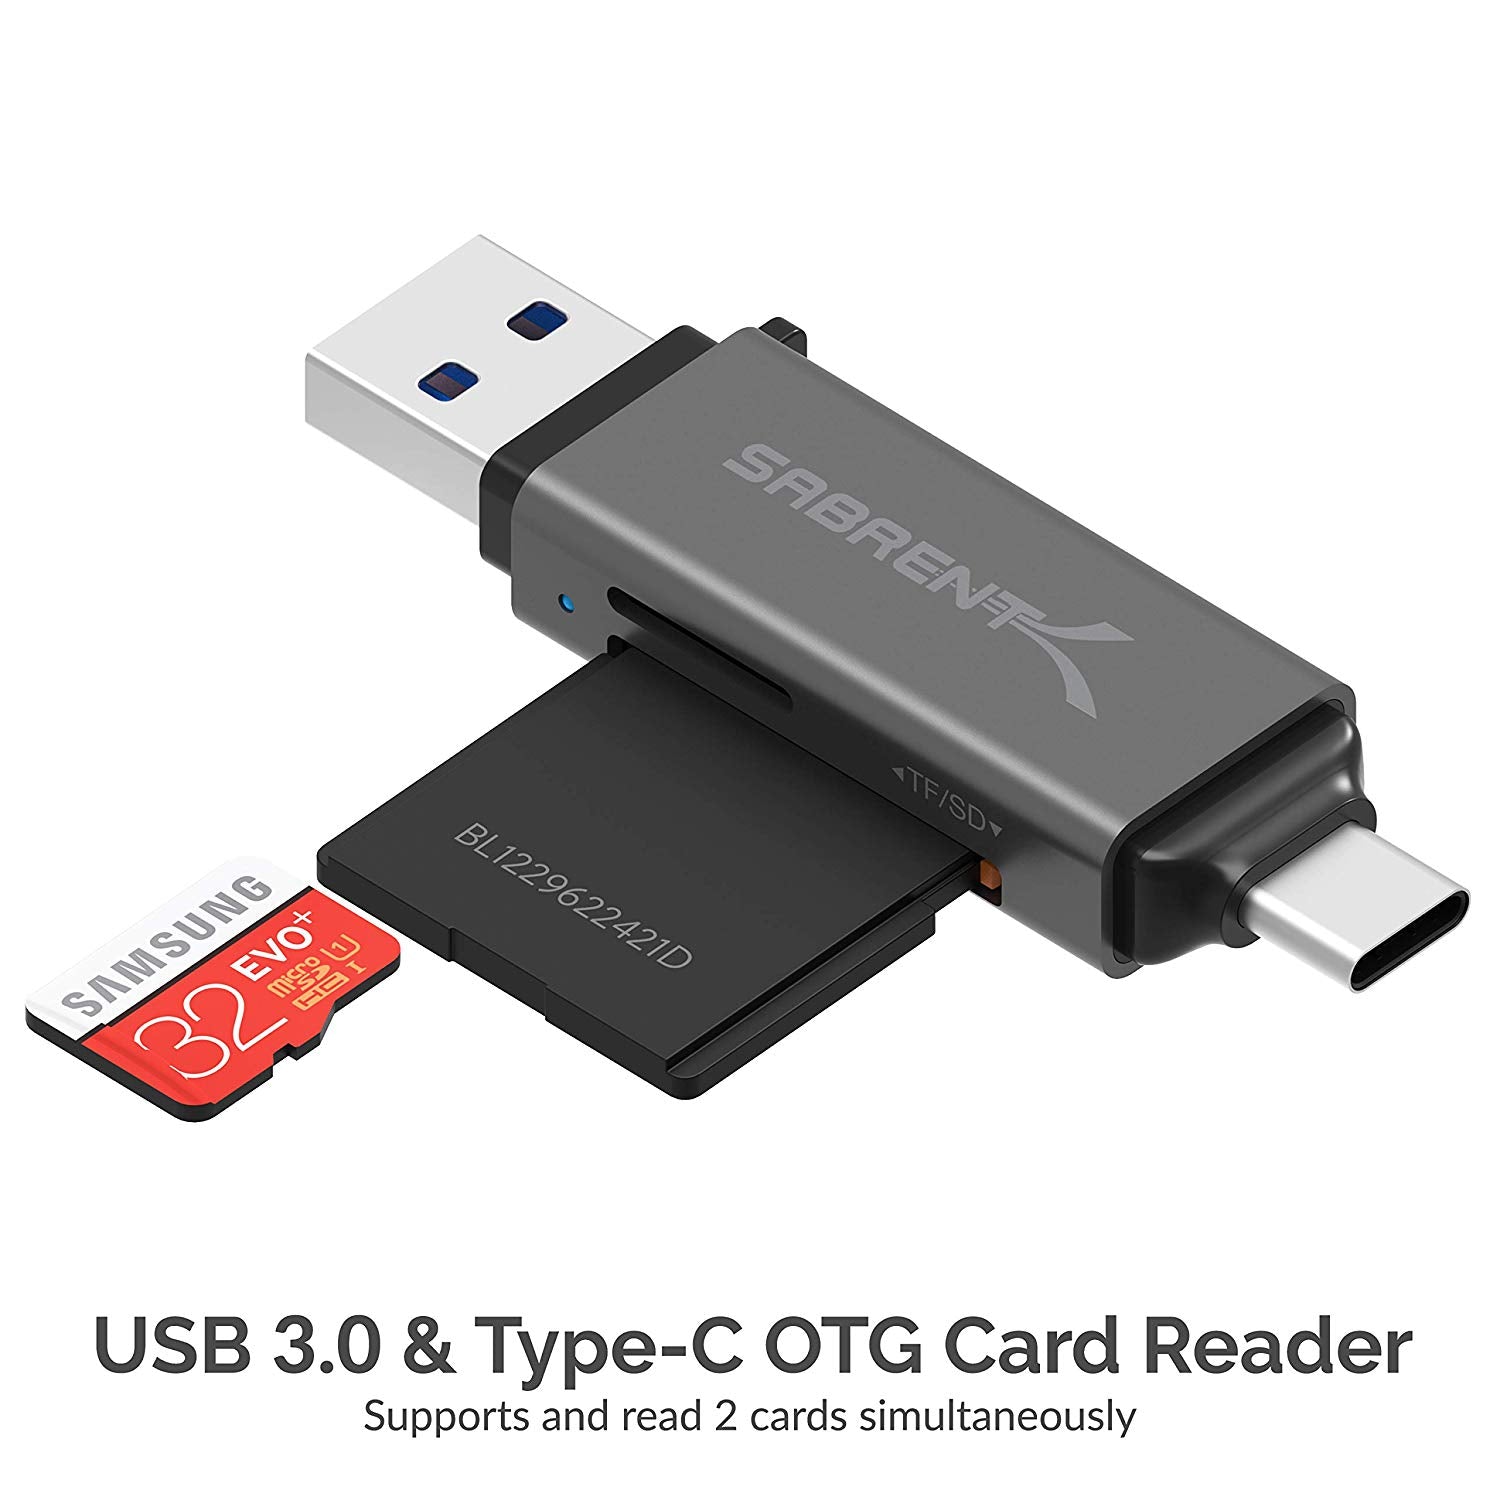 Eenheid schermutseling gastvrouw USB 3.0 and USB Type-C OTG Card Reader - Sabrent